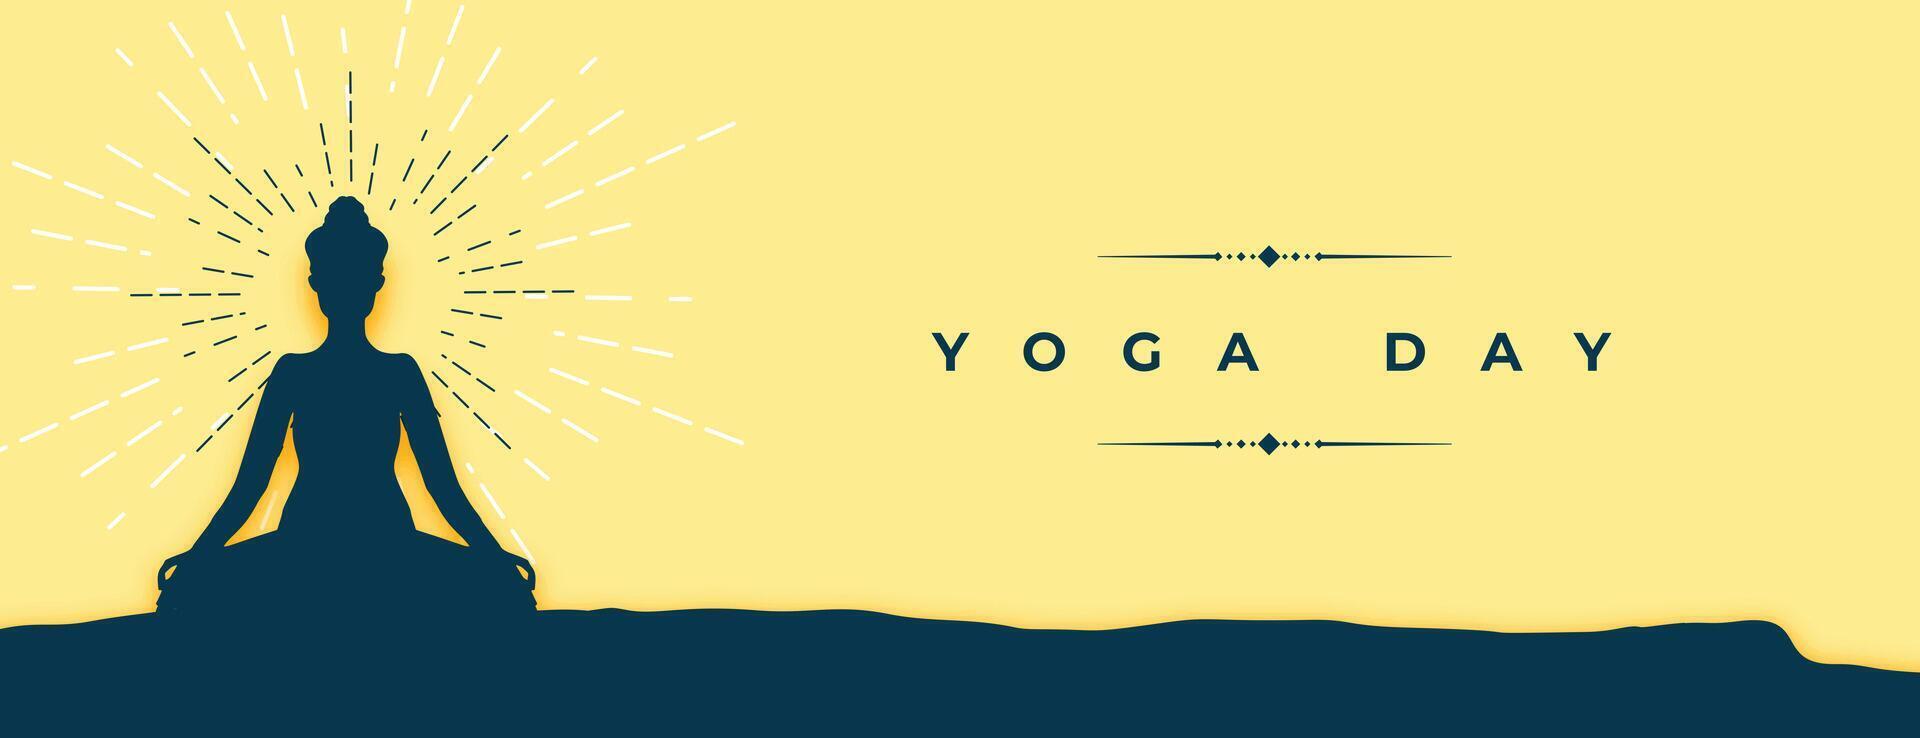 moderno mundo yoga día póster celebrar aptitud y salud vector